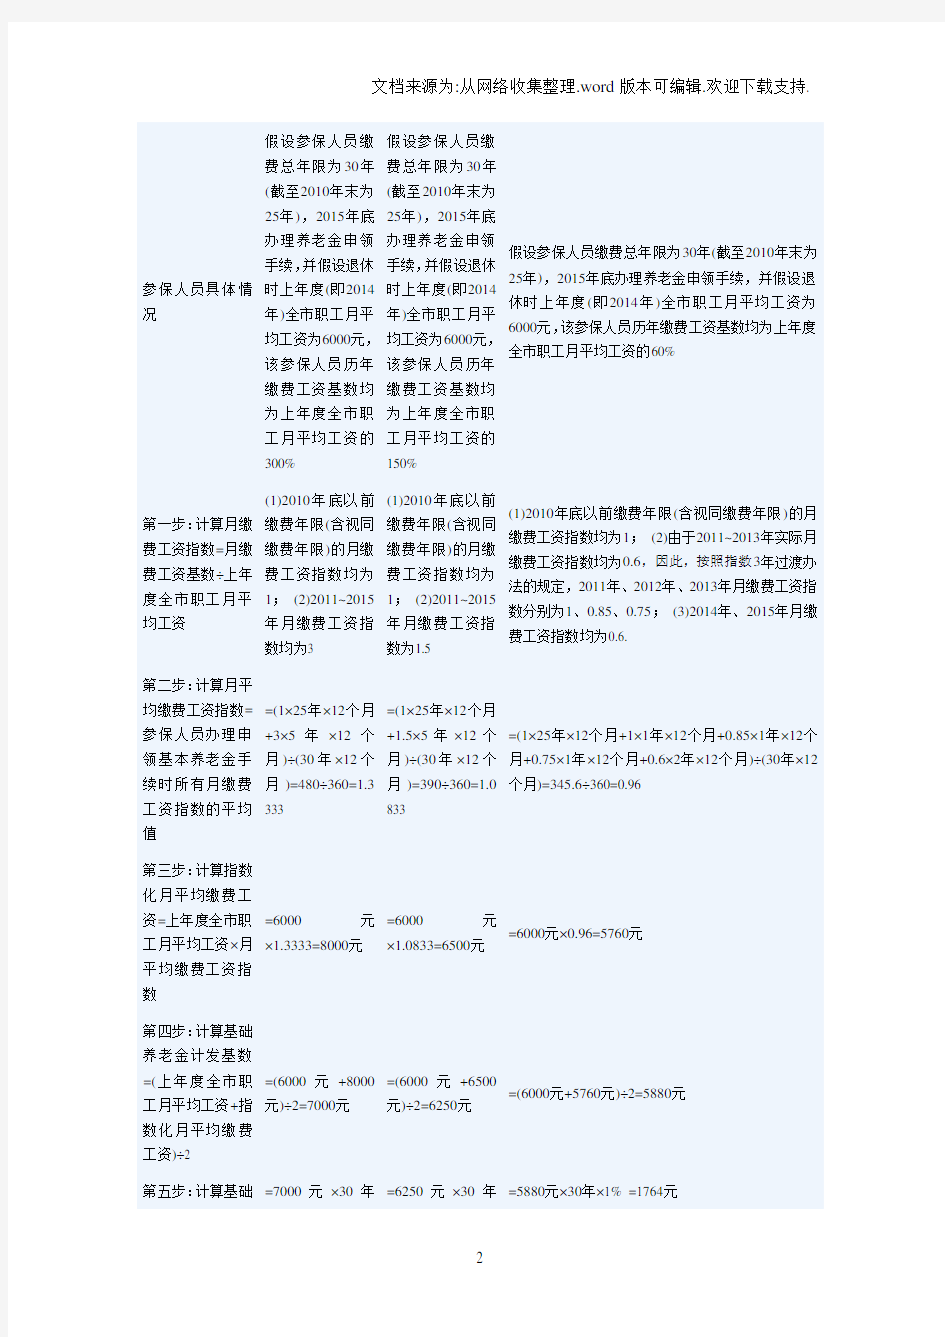 上海市养老金计算方法及计算实例